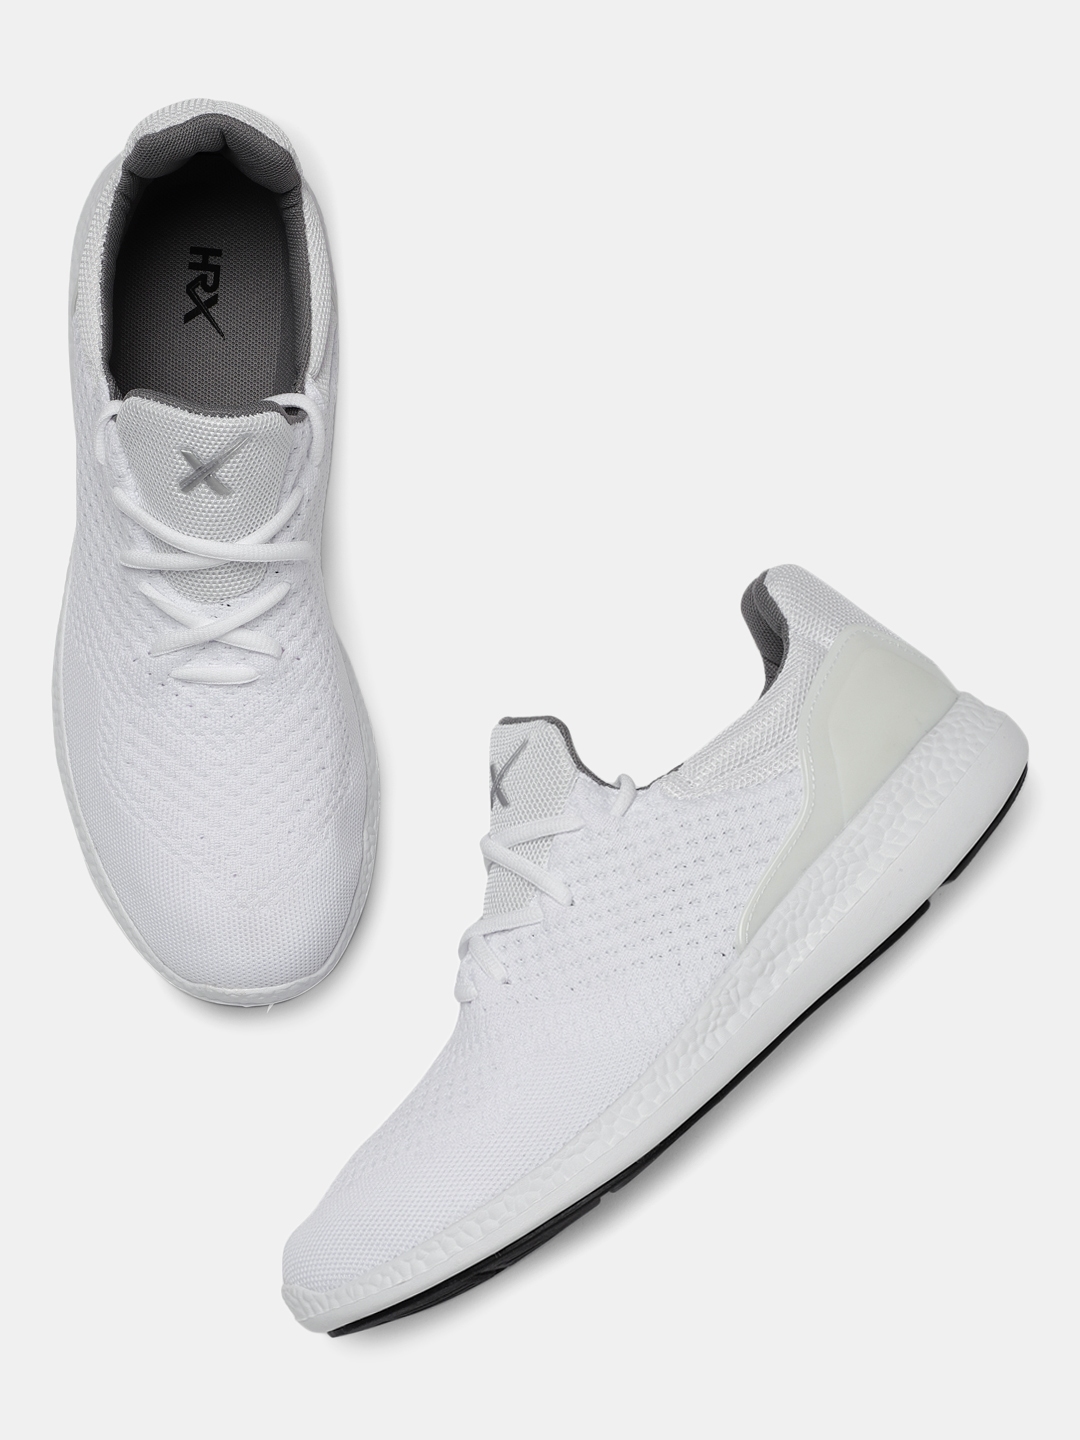 myntra hrx white shoes